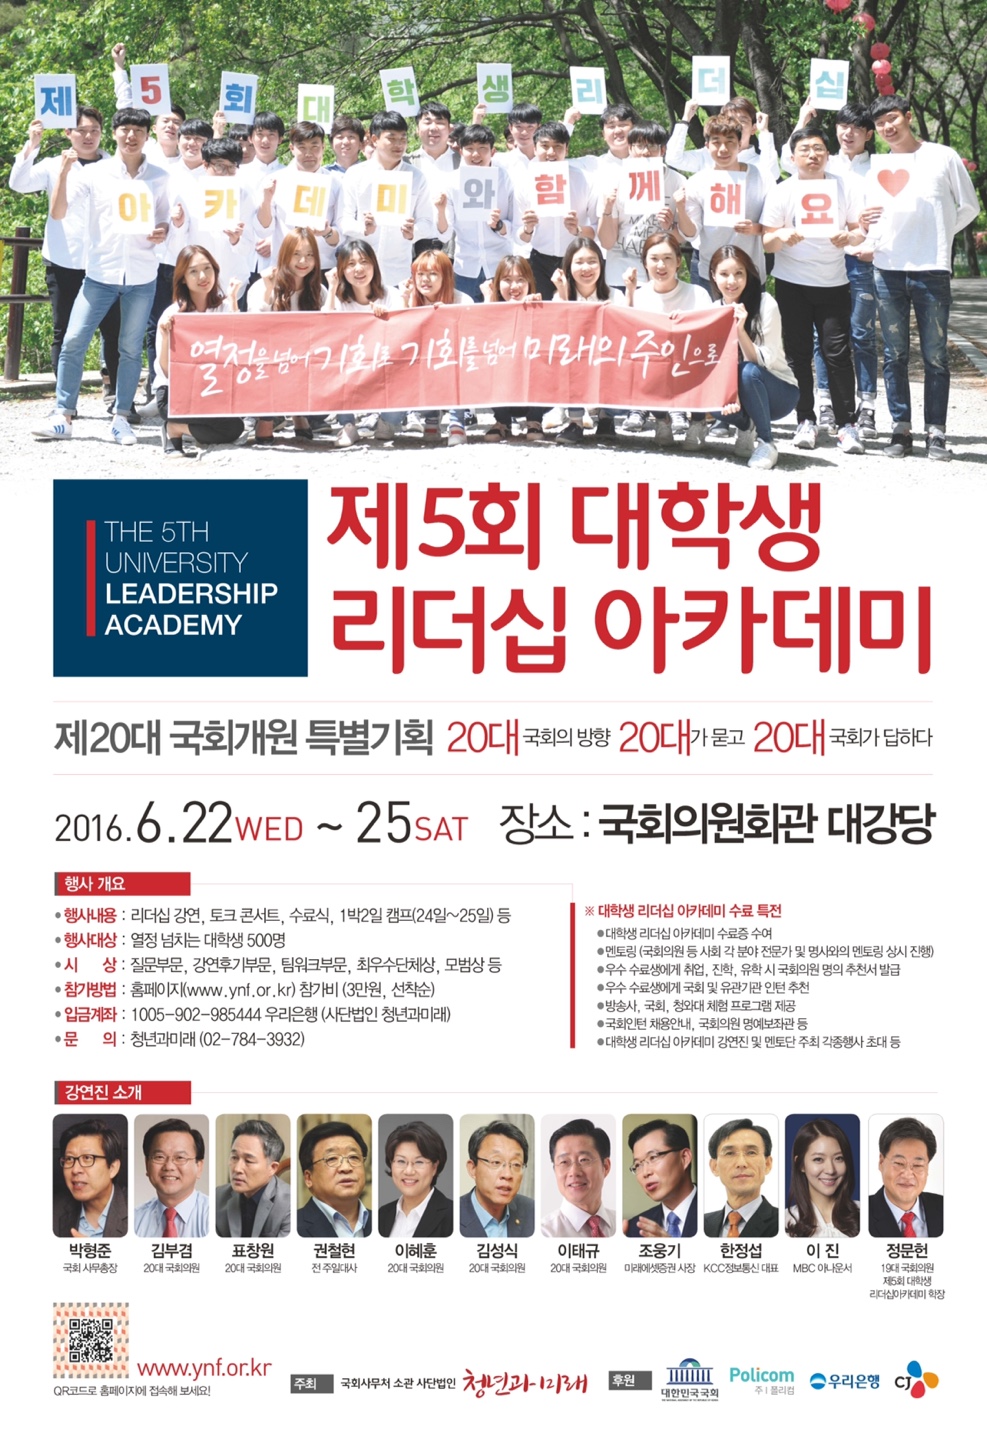 제5회 리더십 아카데미 홍보 포스터.jpg